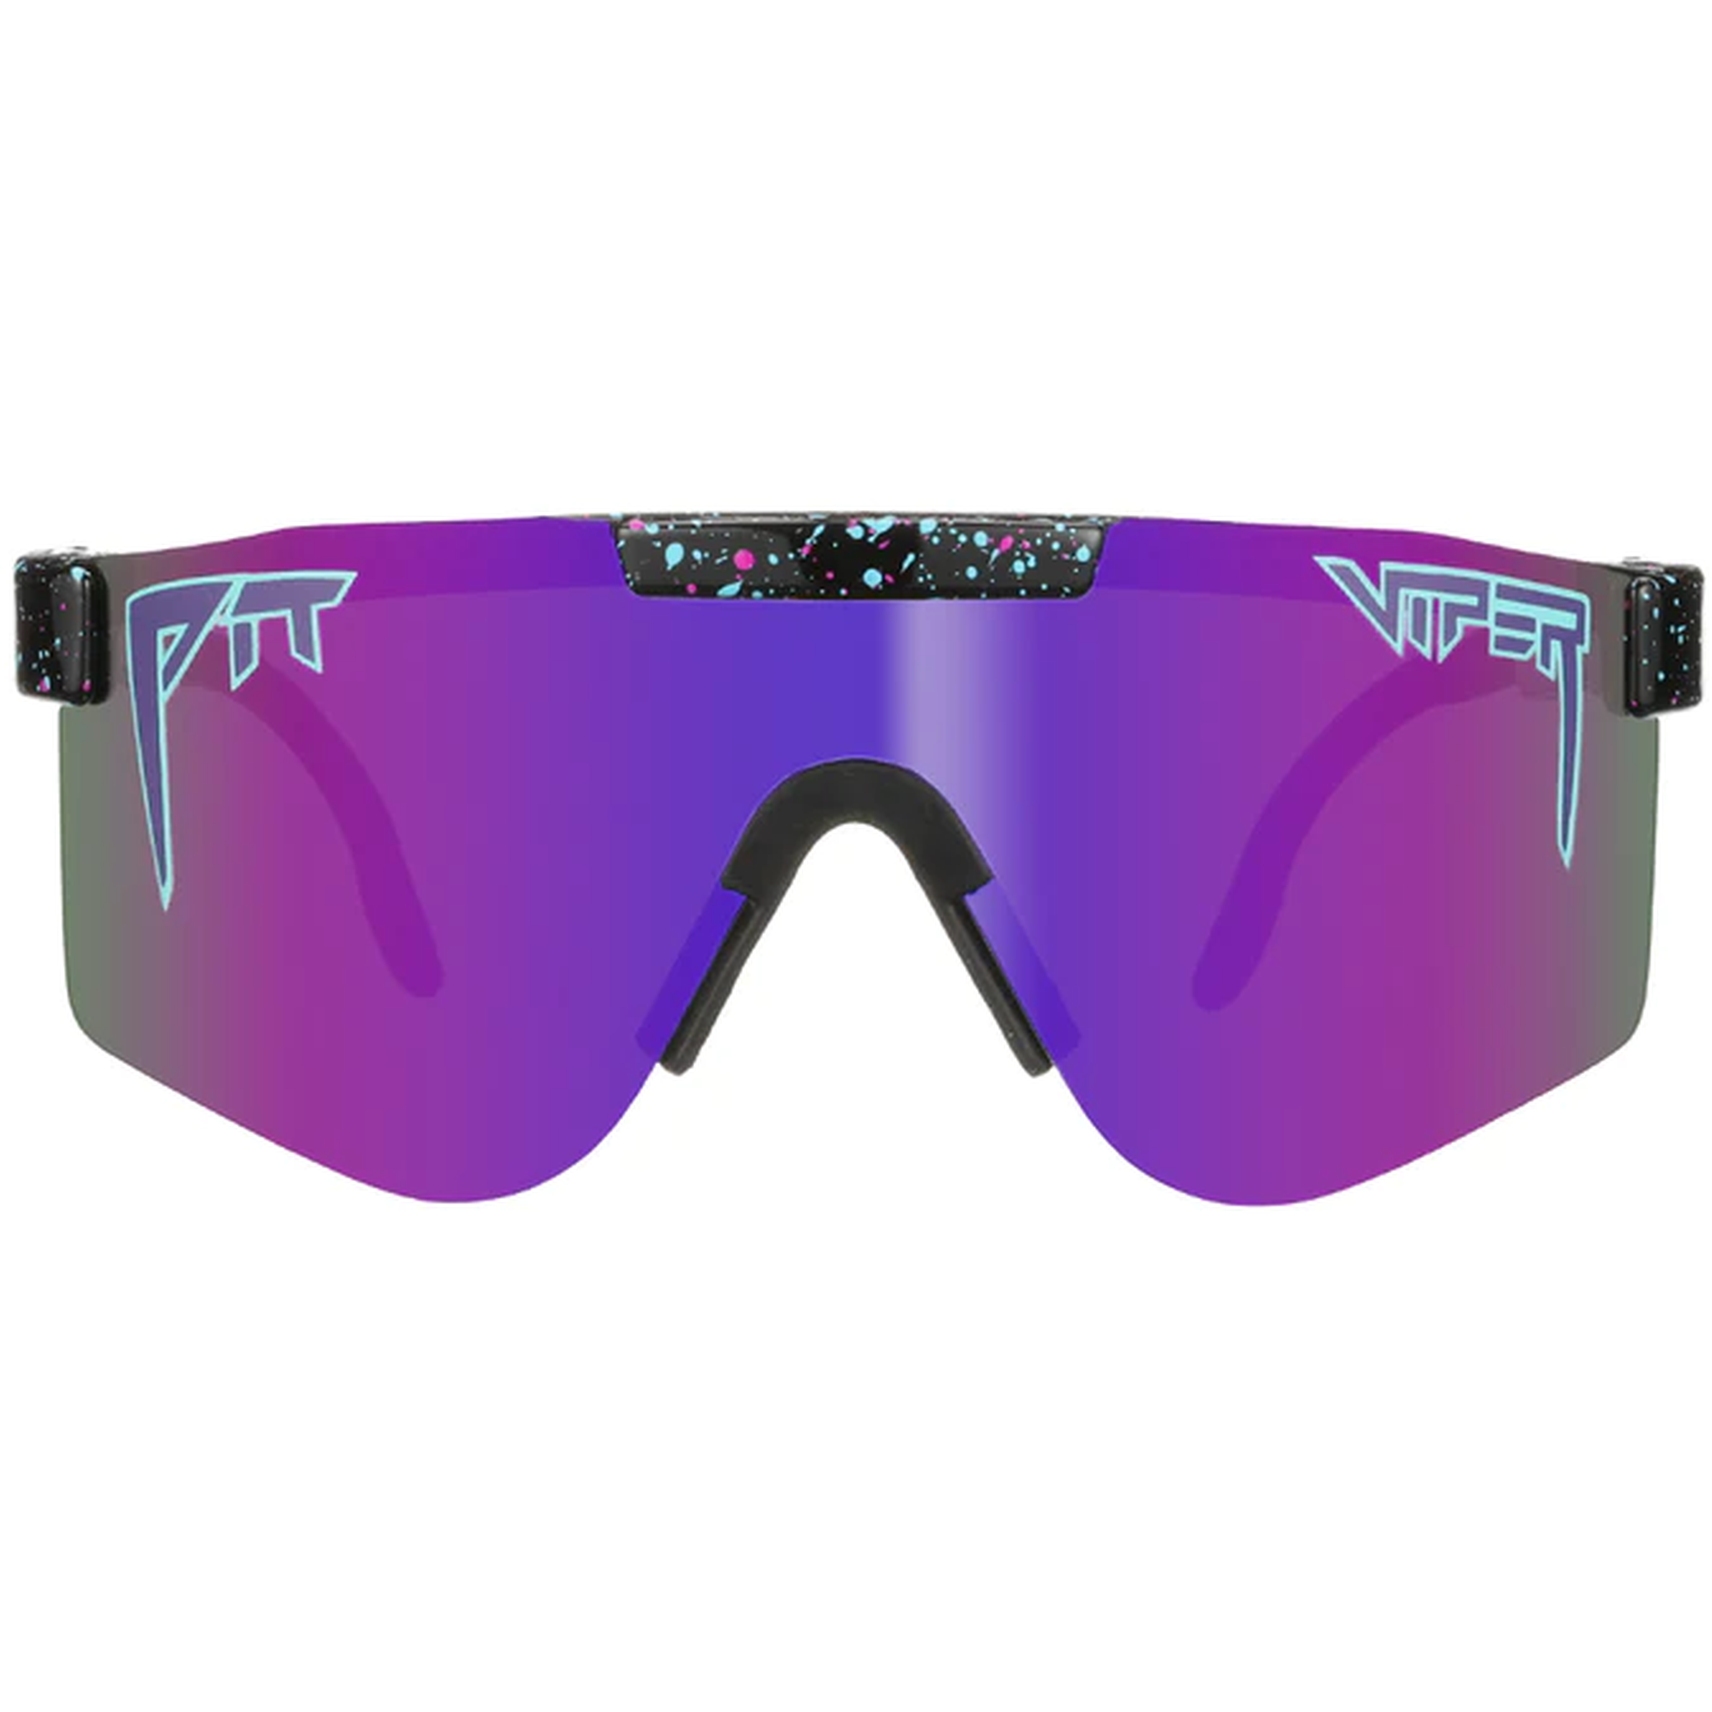 Produktbild von Pit Viper The Originals Brille - Double Wide - The Night Fall / Polarized Purple Mirror